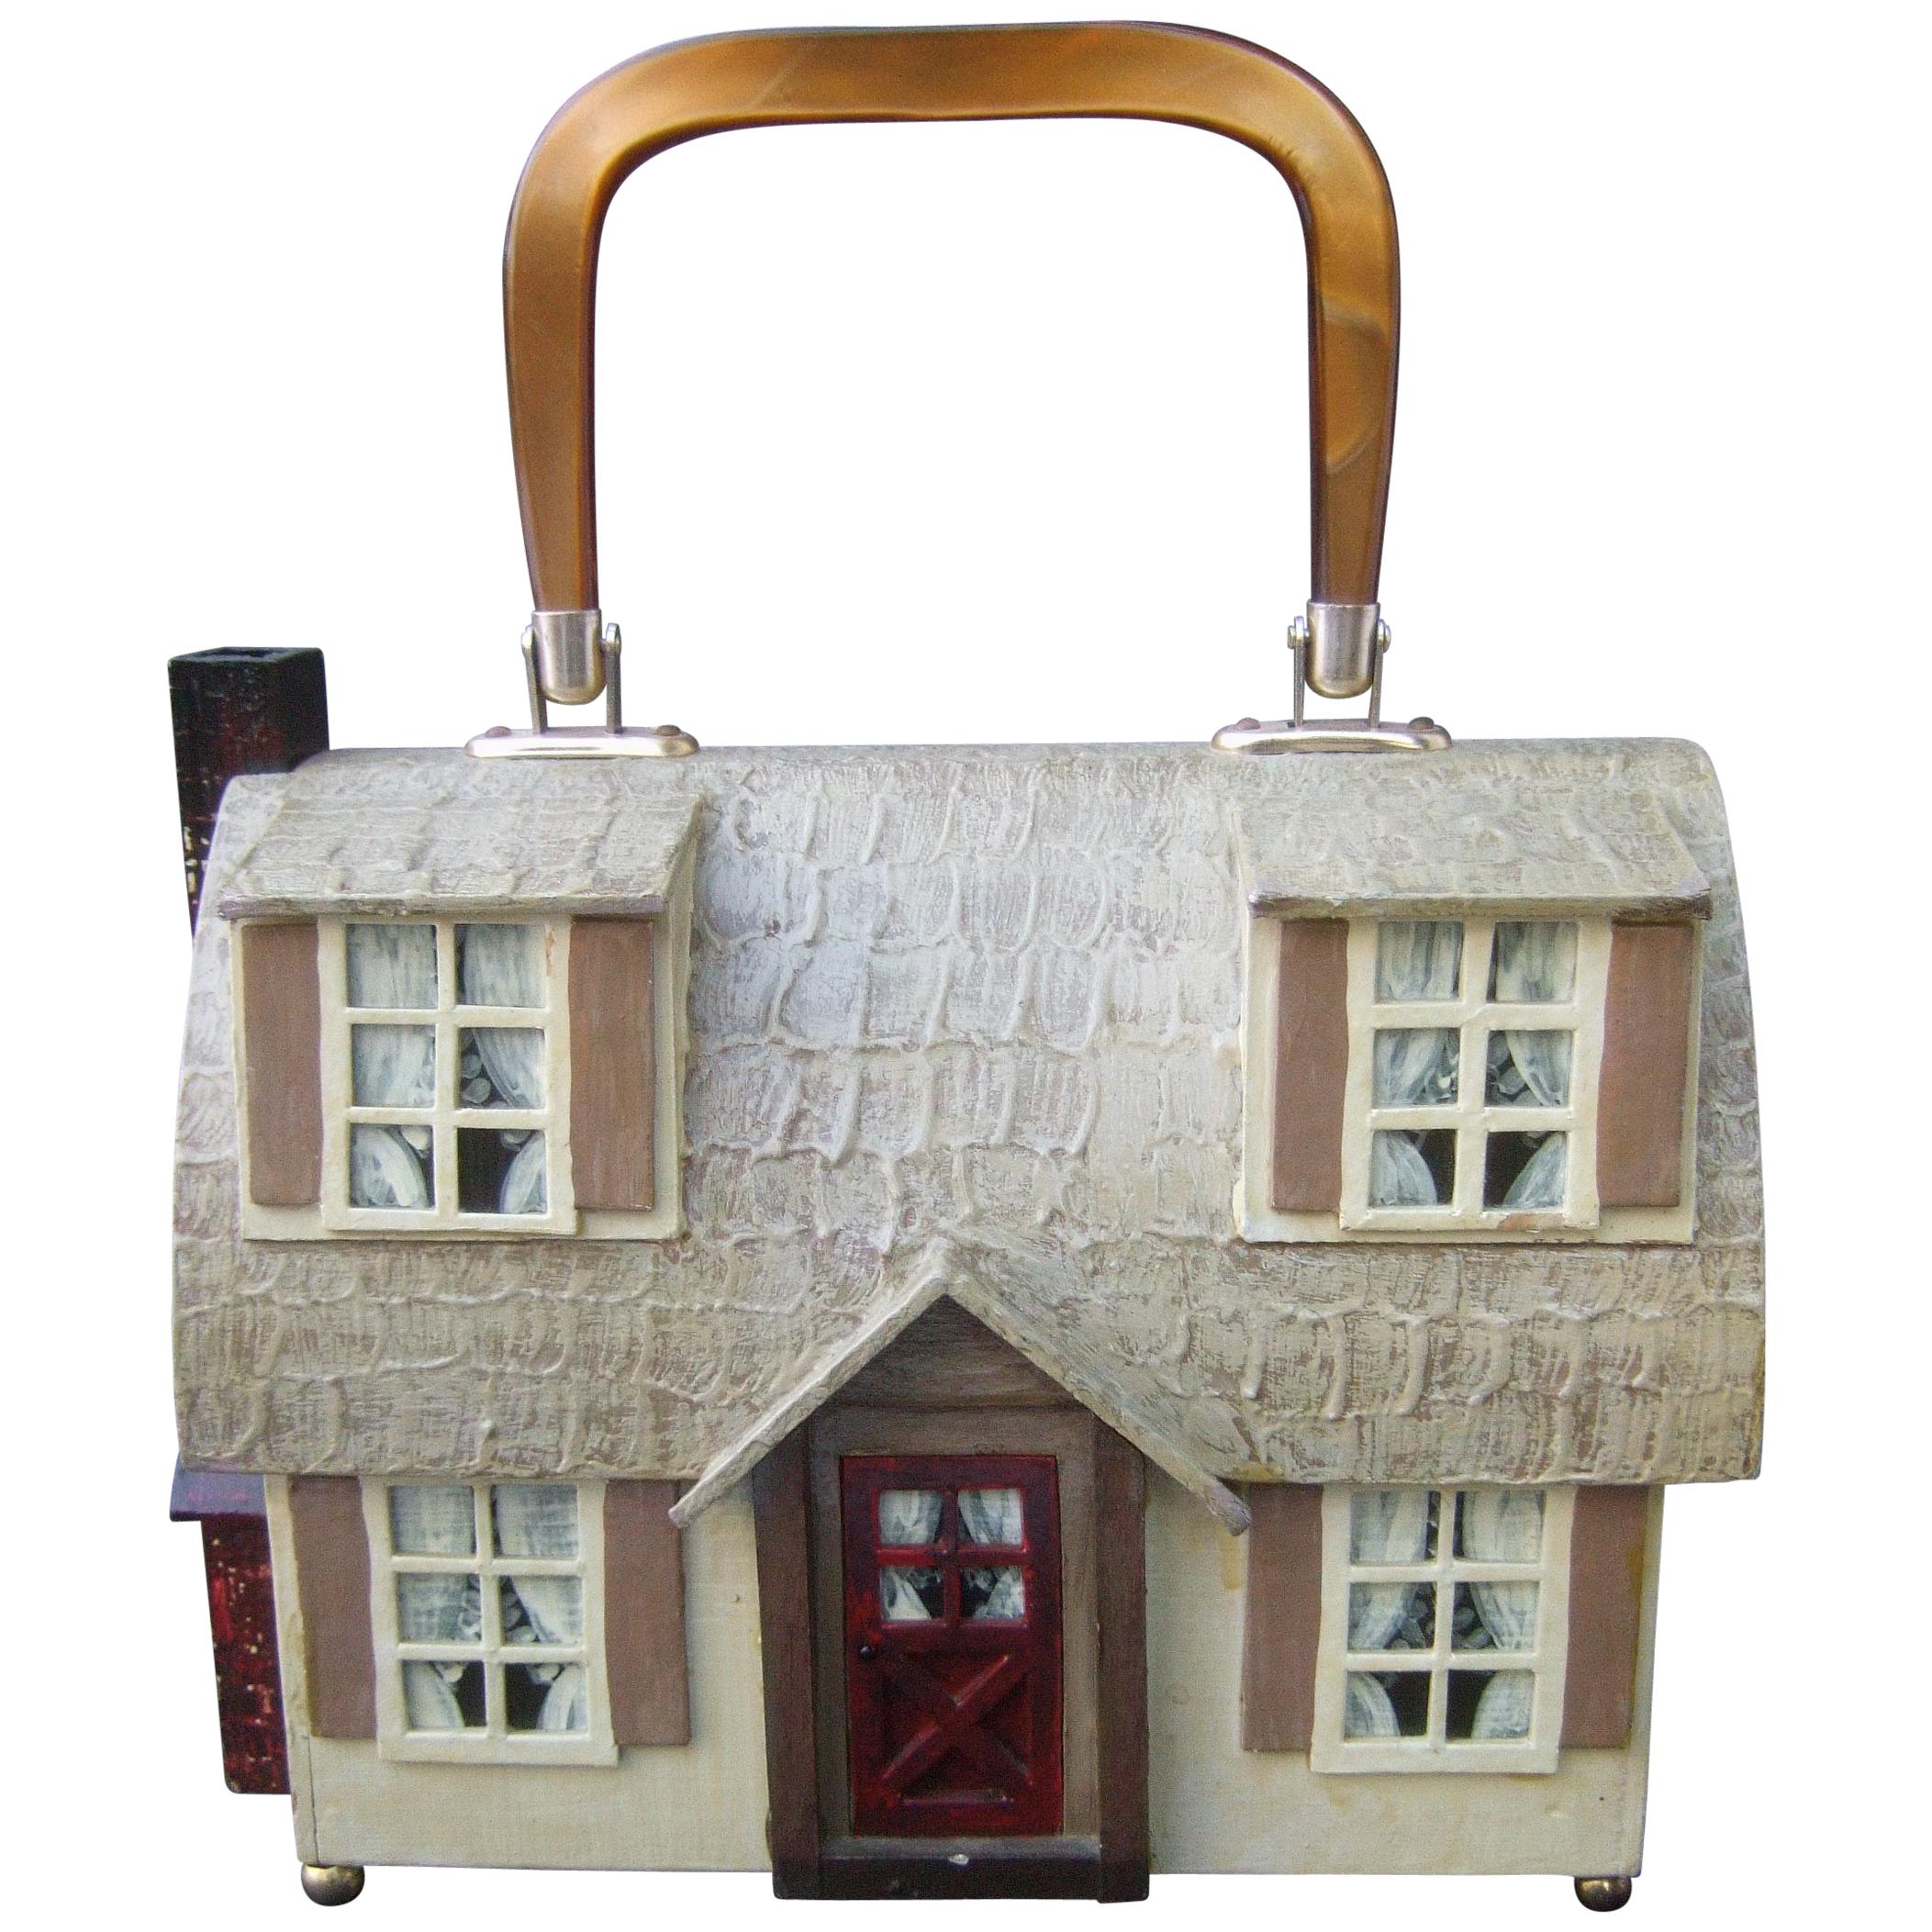 Whimsical Wood Enamel Handmade Artisan House Design Handbag c 1970s